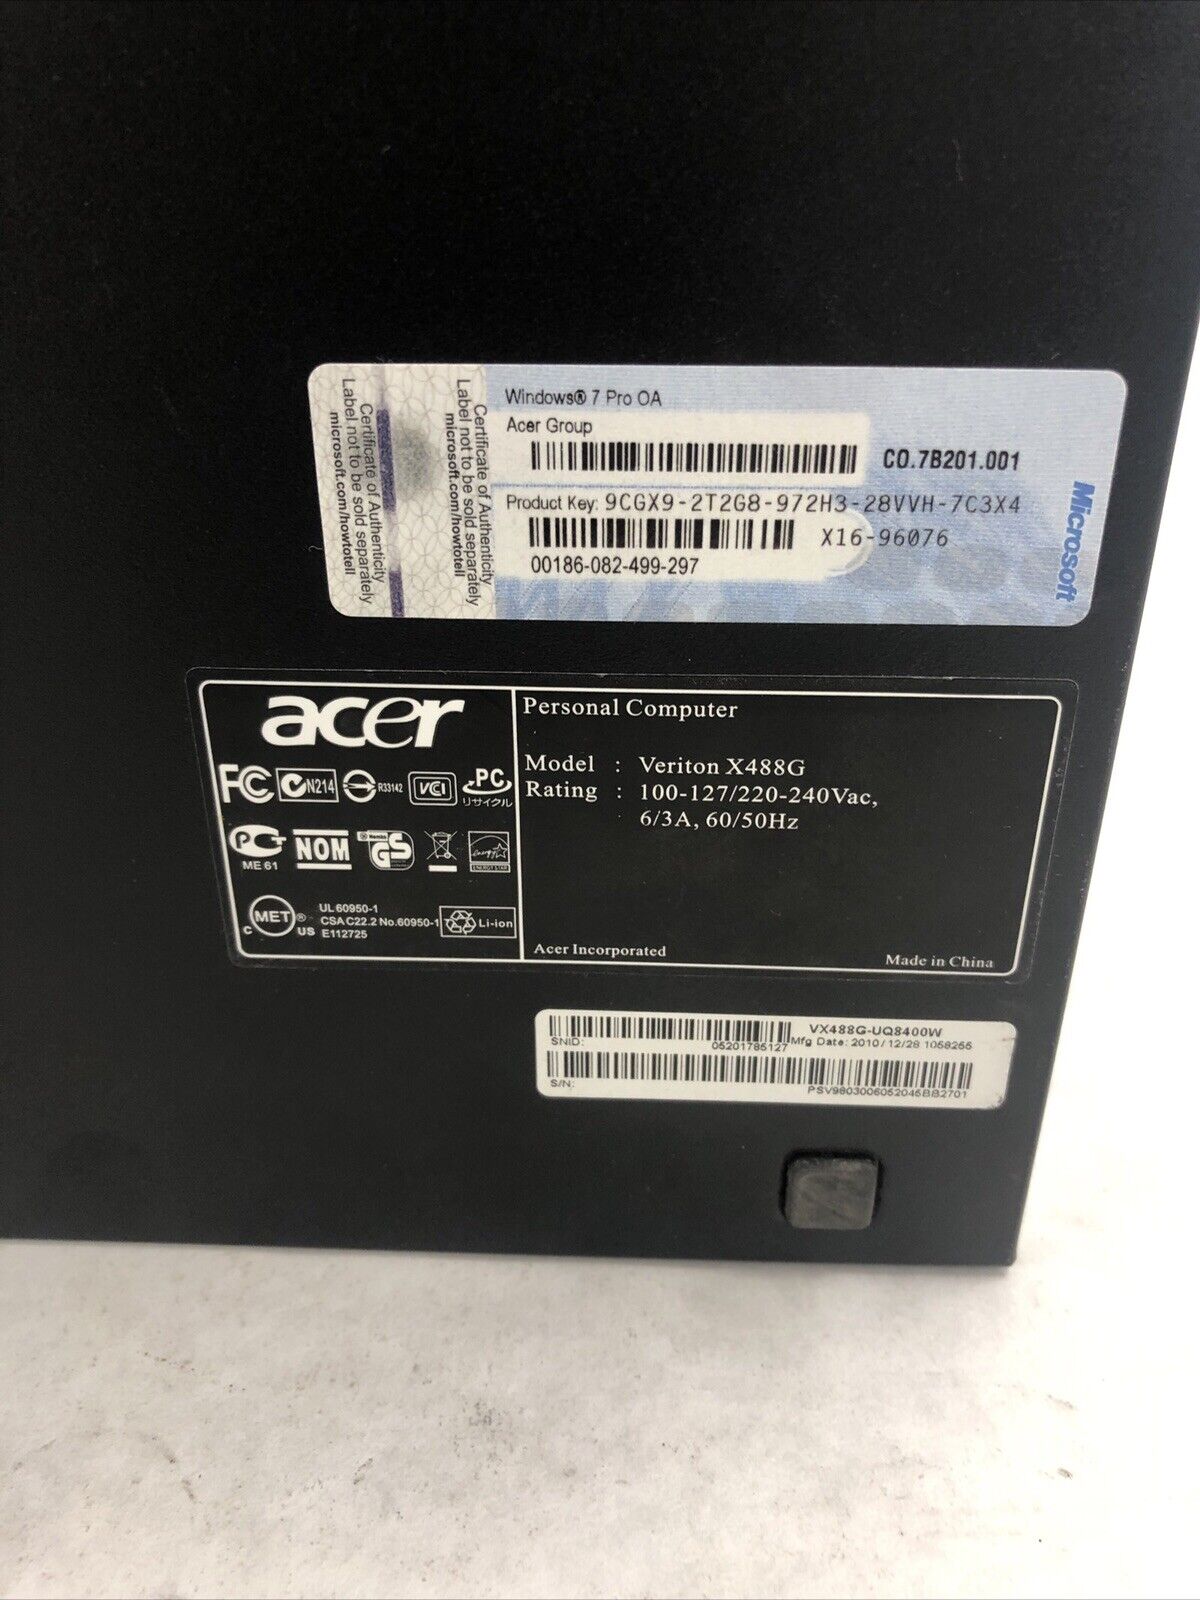 Acer Veriton X488G SFF Intel Core 2 Quad Q8400 2.66GHz 4GB RAM No HDD No OS